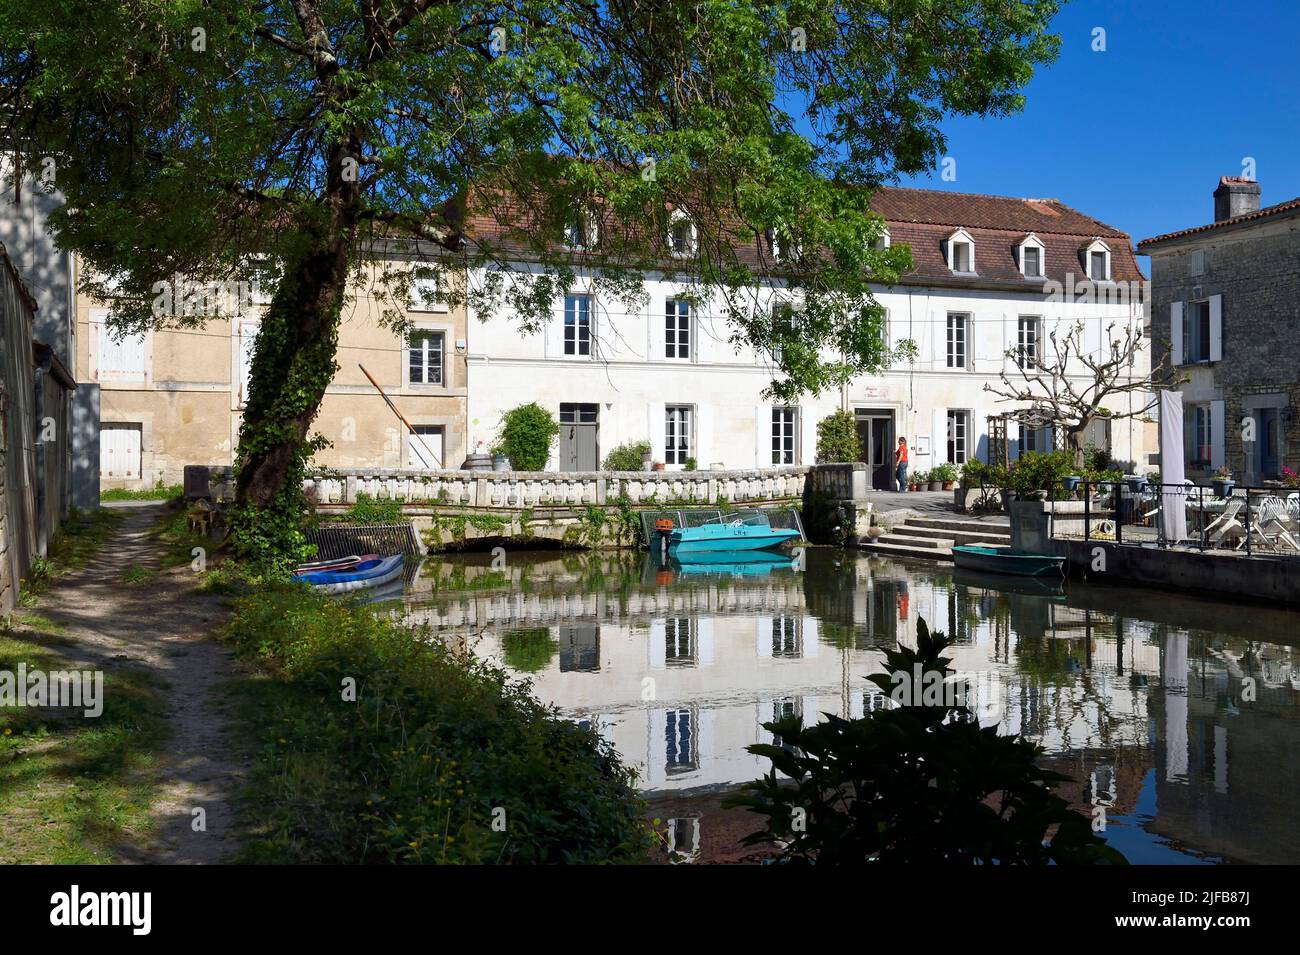 Francia, Charente, Bassac, moulin de Bassac, Foto de stock